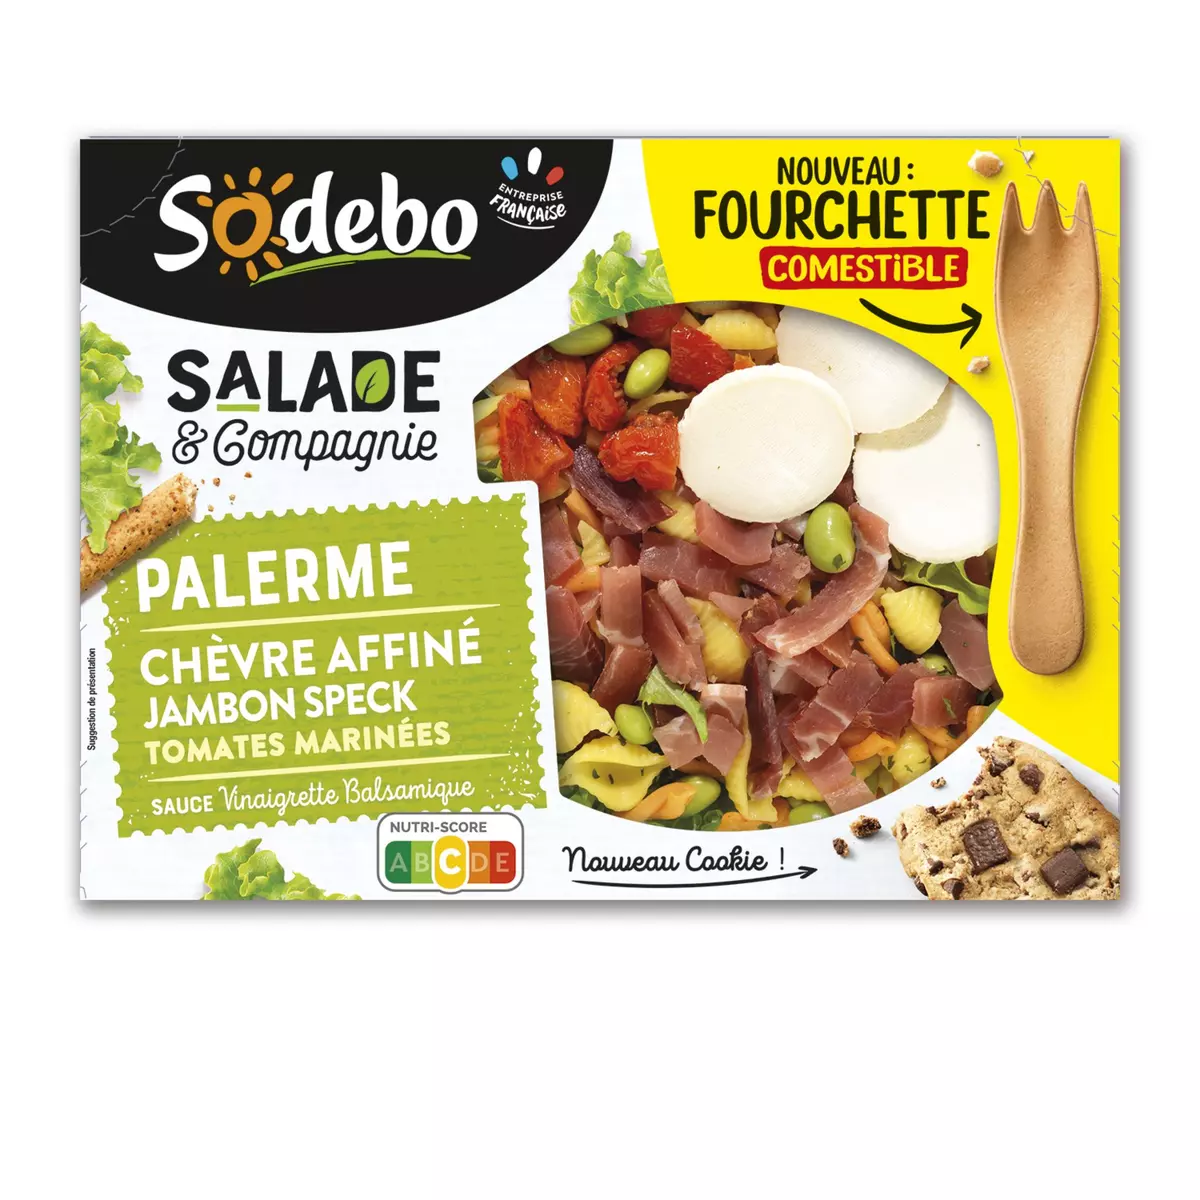 SODEBO Salade & compagnie Palerme pâtes salade jambon speck chèvre tomates marinées sans couvert 320g